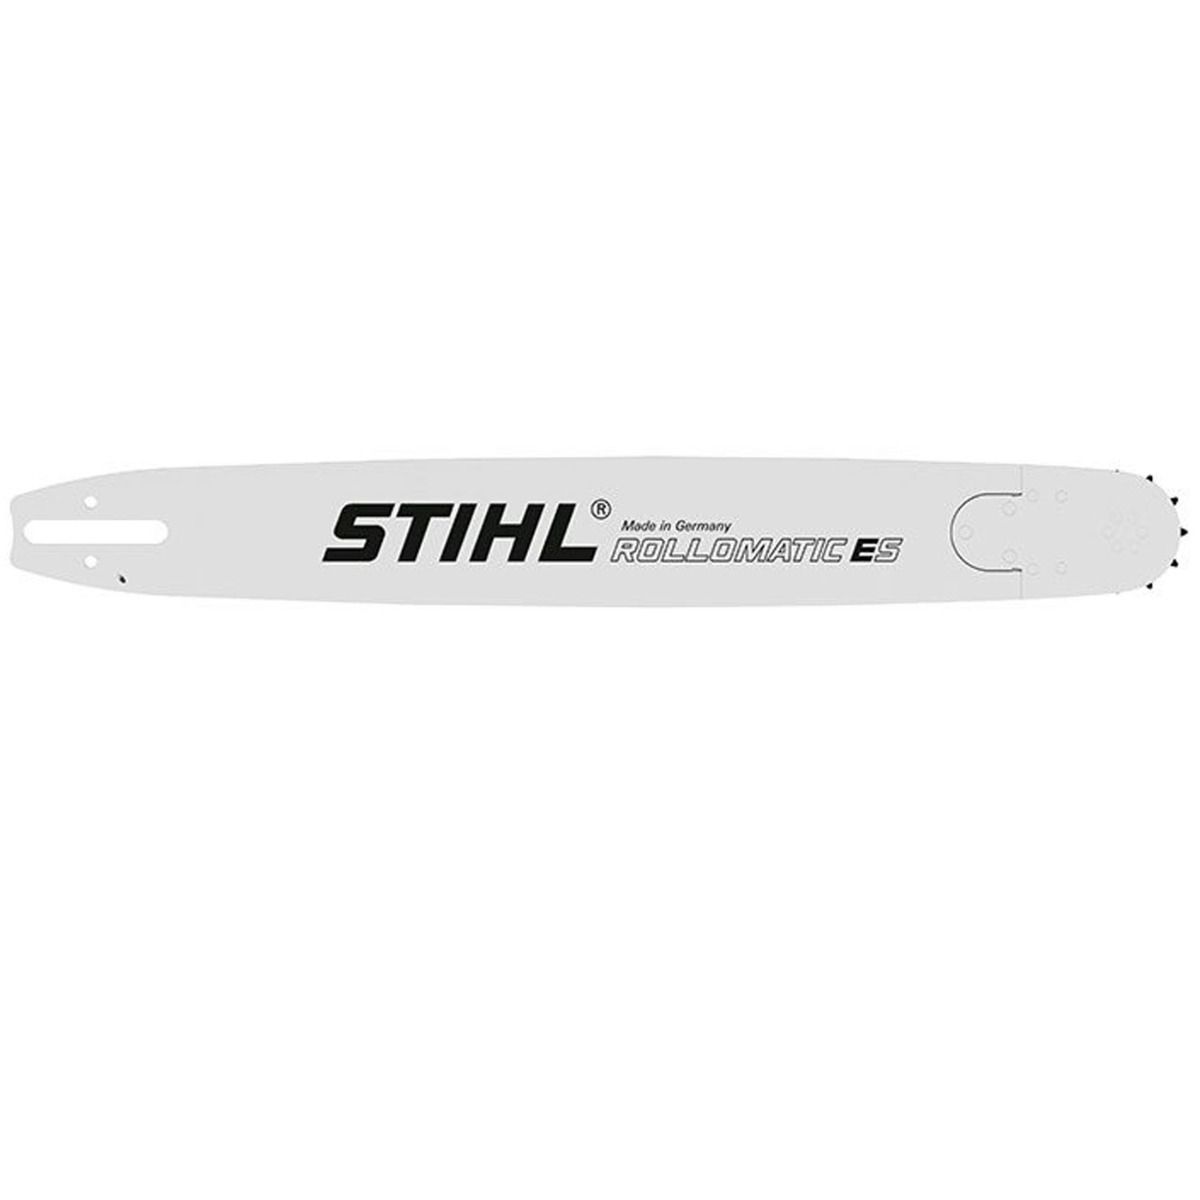 STIHL Rollomatic ES 3/8 1.6 mm Guide Bar